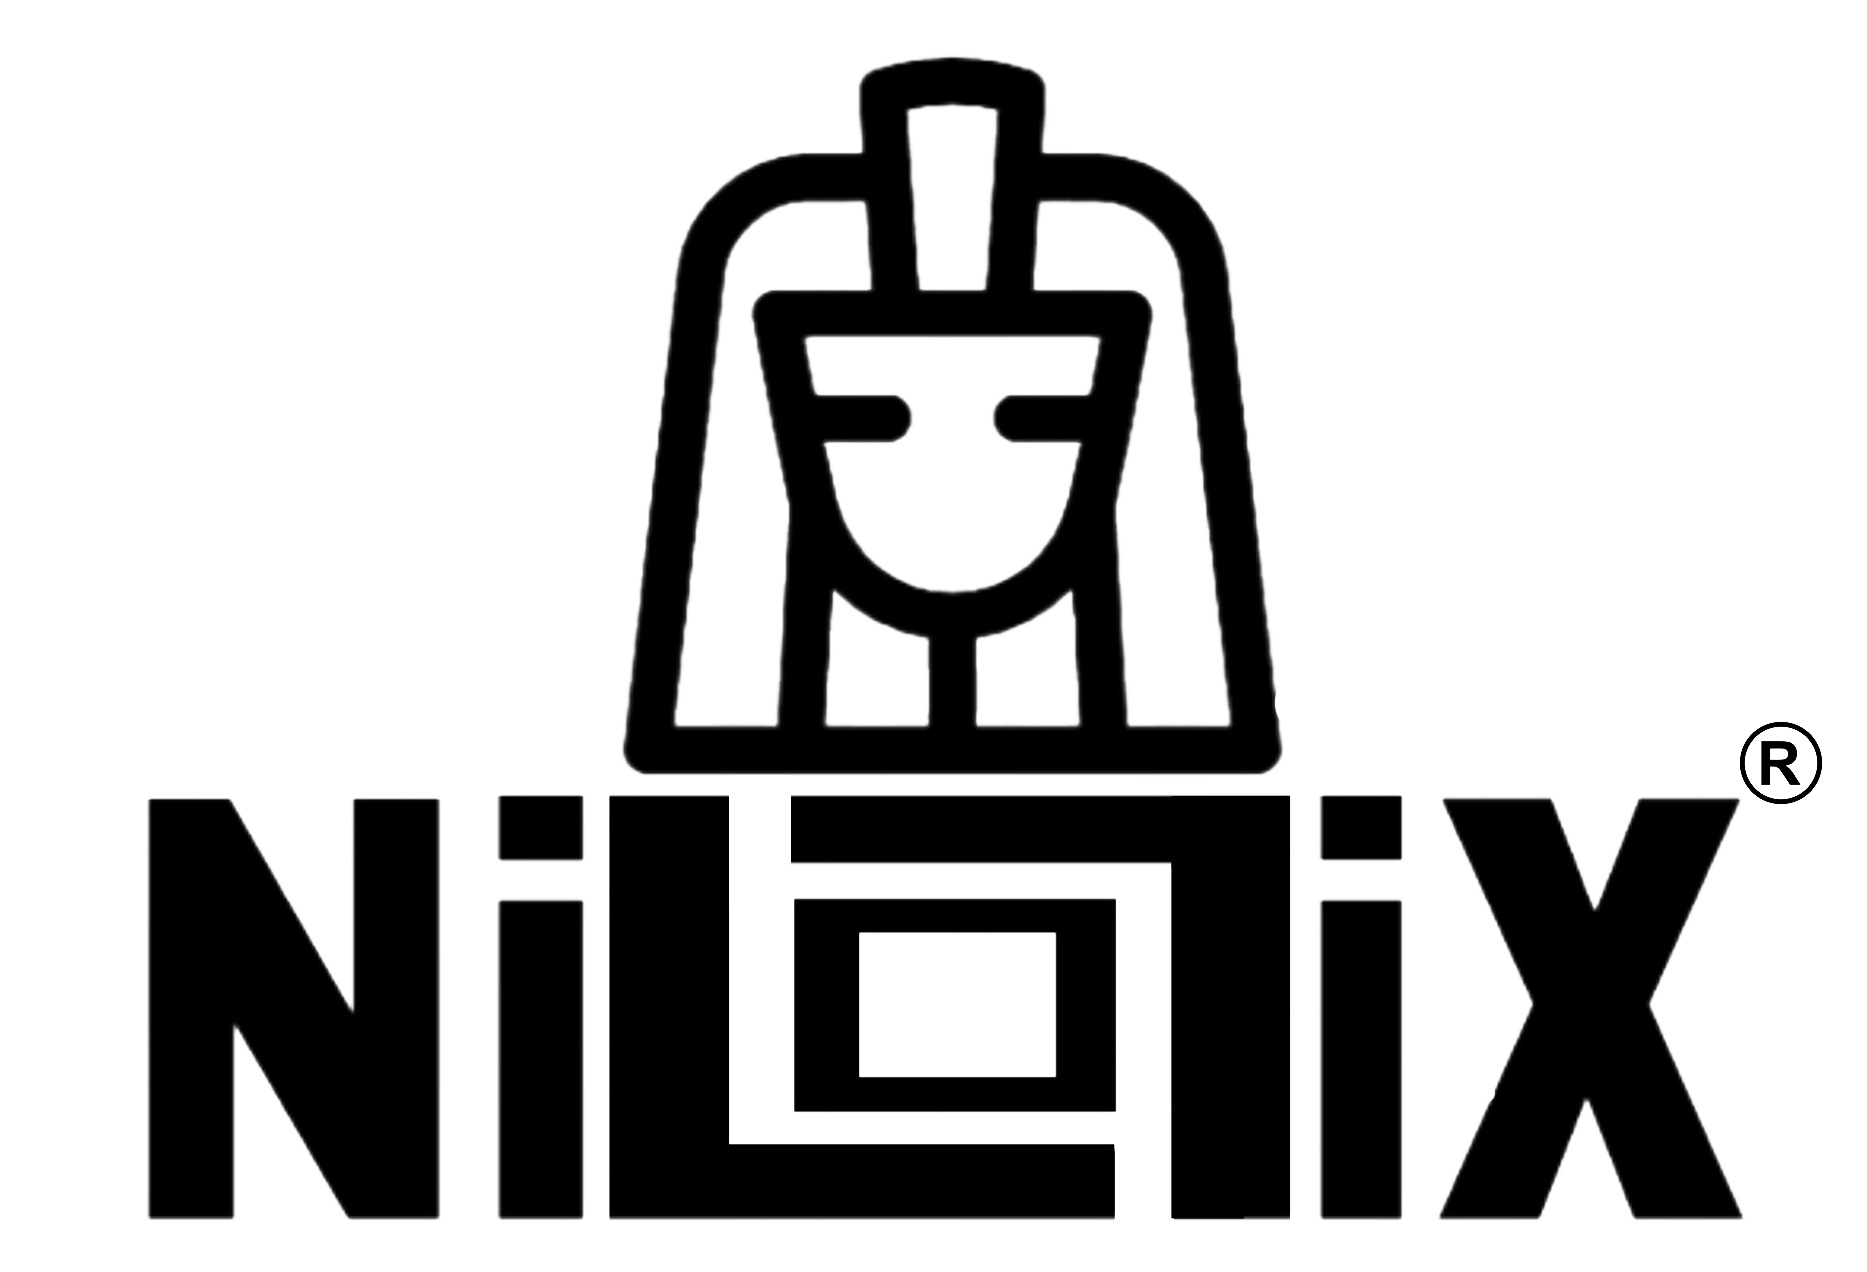 Nilotix